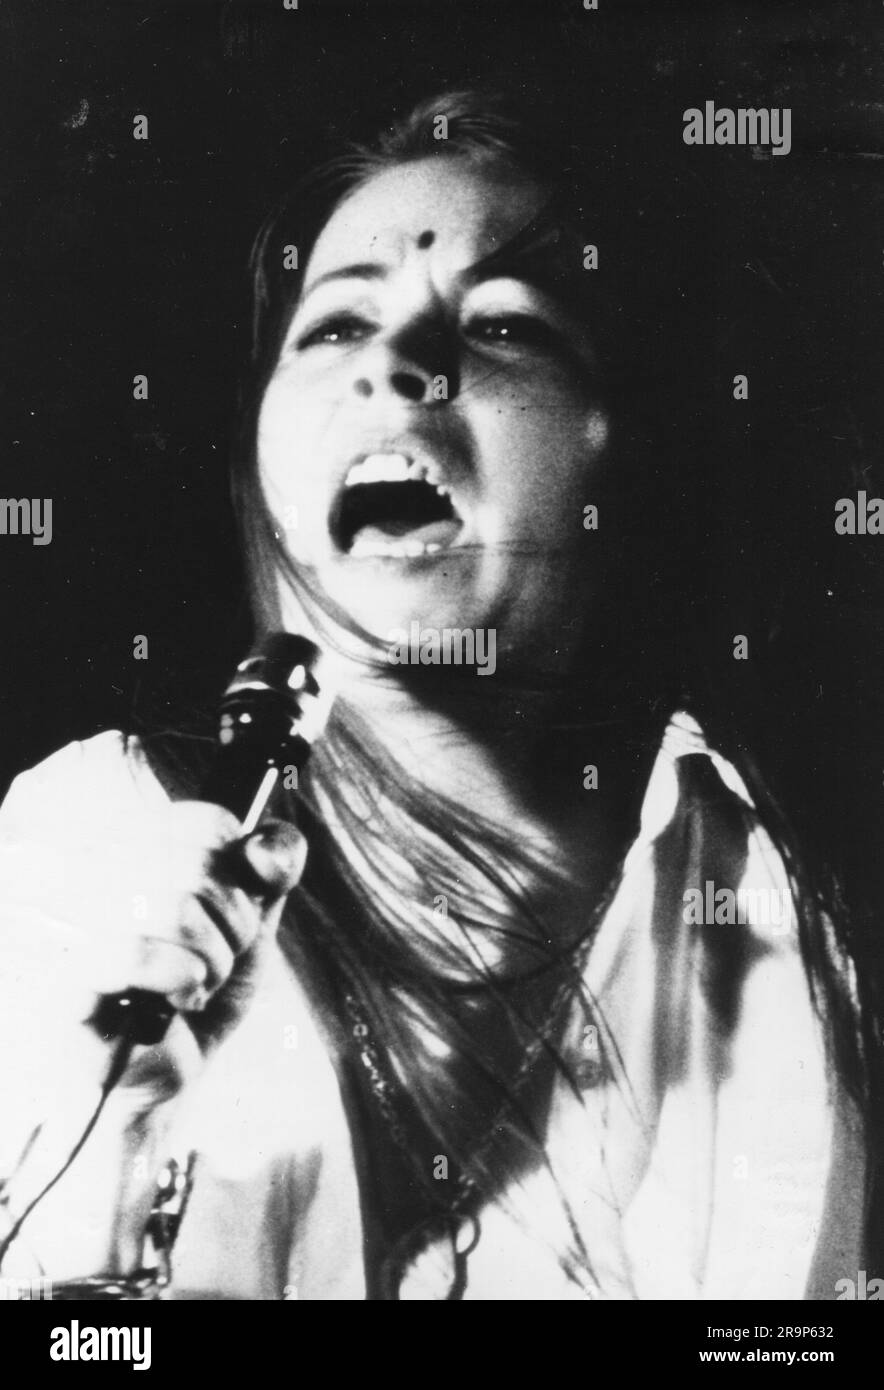 Weinhold, Jutta, * 19.10.1947, cantante tedesca (musica rock), accanto allo spettacolo teatrale, anni '1970, DIRITTI AGGIUNTIVI-CLEARANCE-INFO-NOT-AVAILABLE Foto Stock